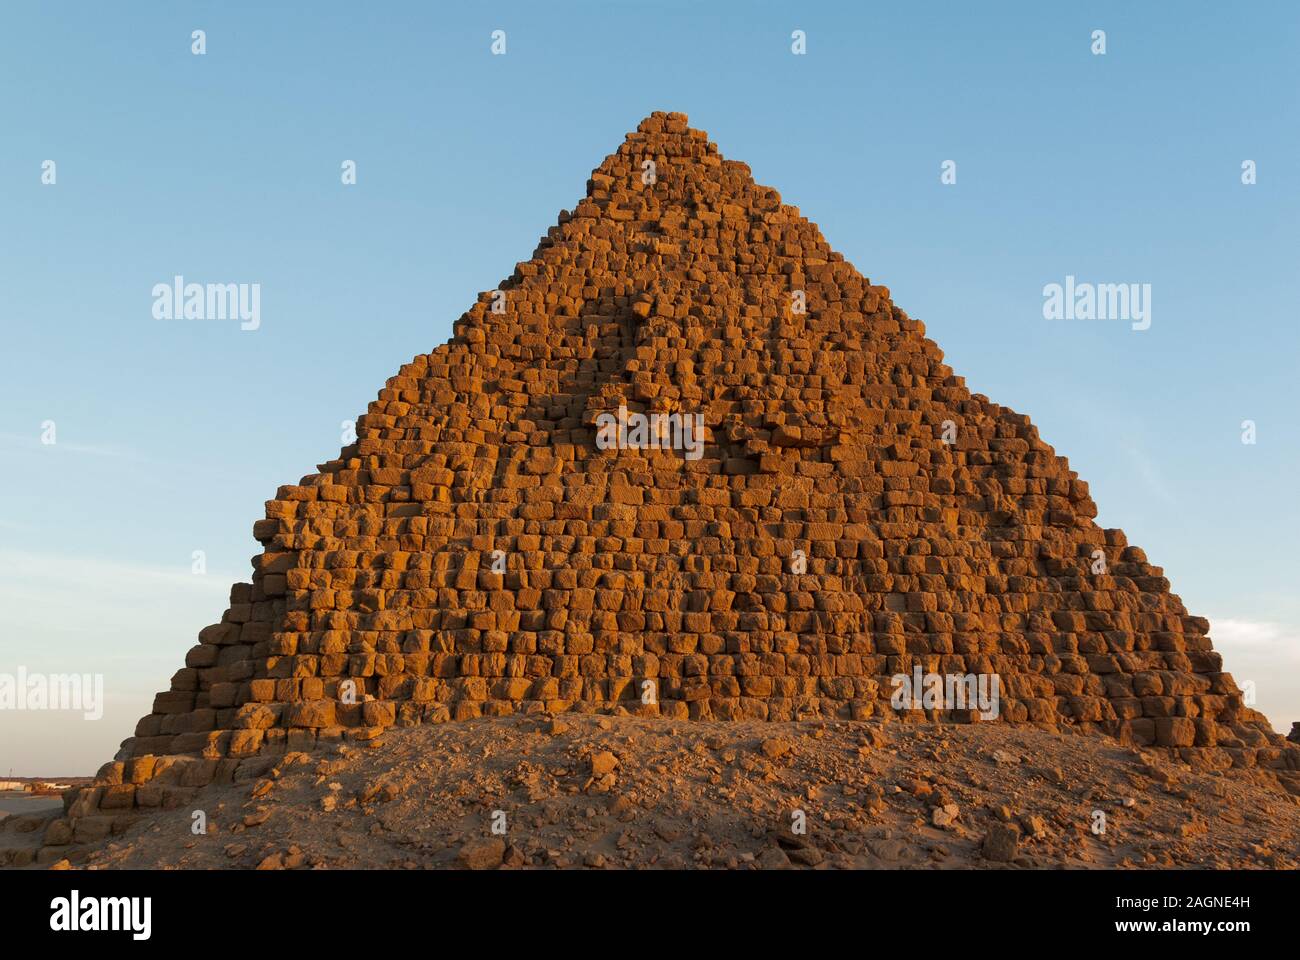 Pyramids, Royal Necropoiis, Nuri near Karima, northern Sudan Stock Photo